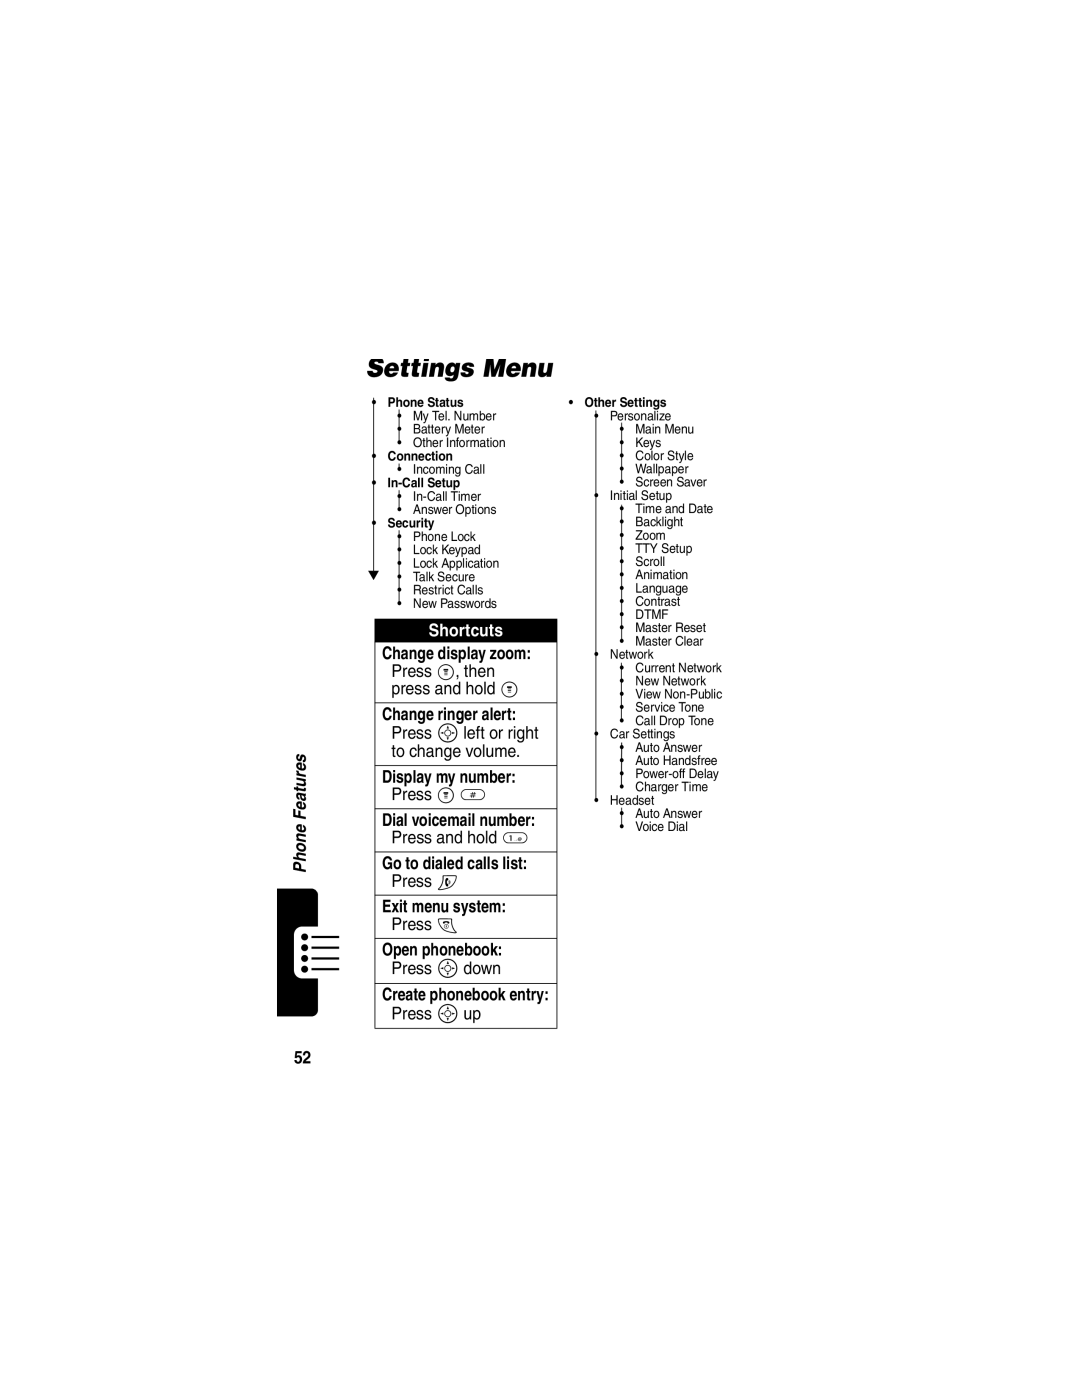 Motorola C353 manual Settings Menu, Shortcuts 